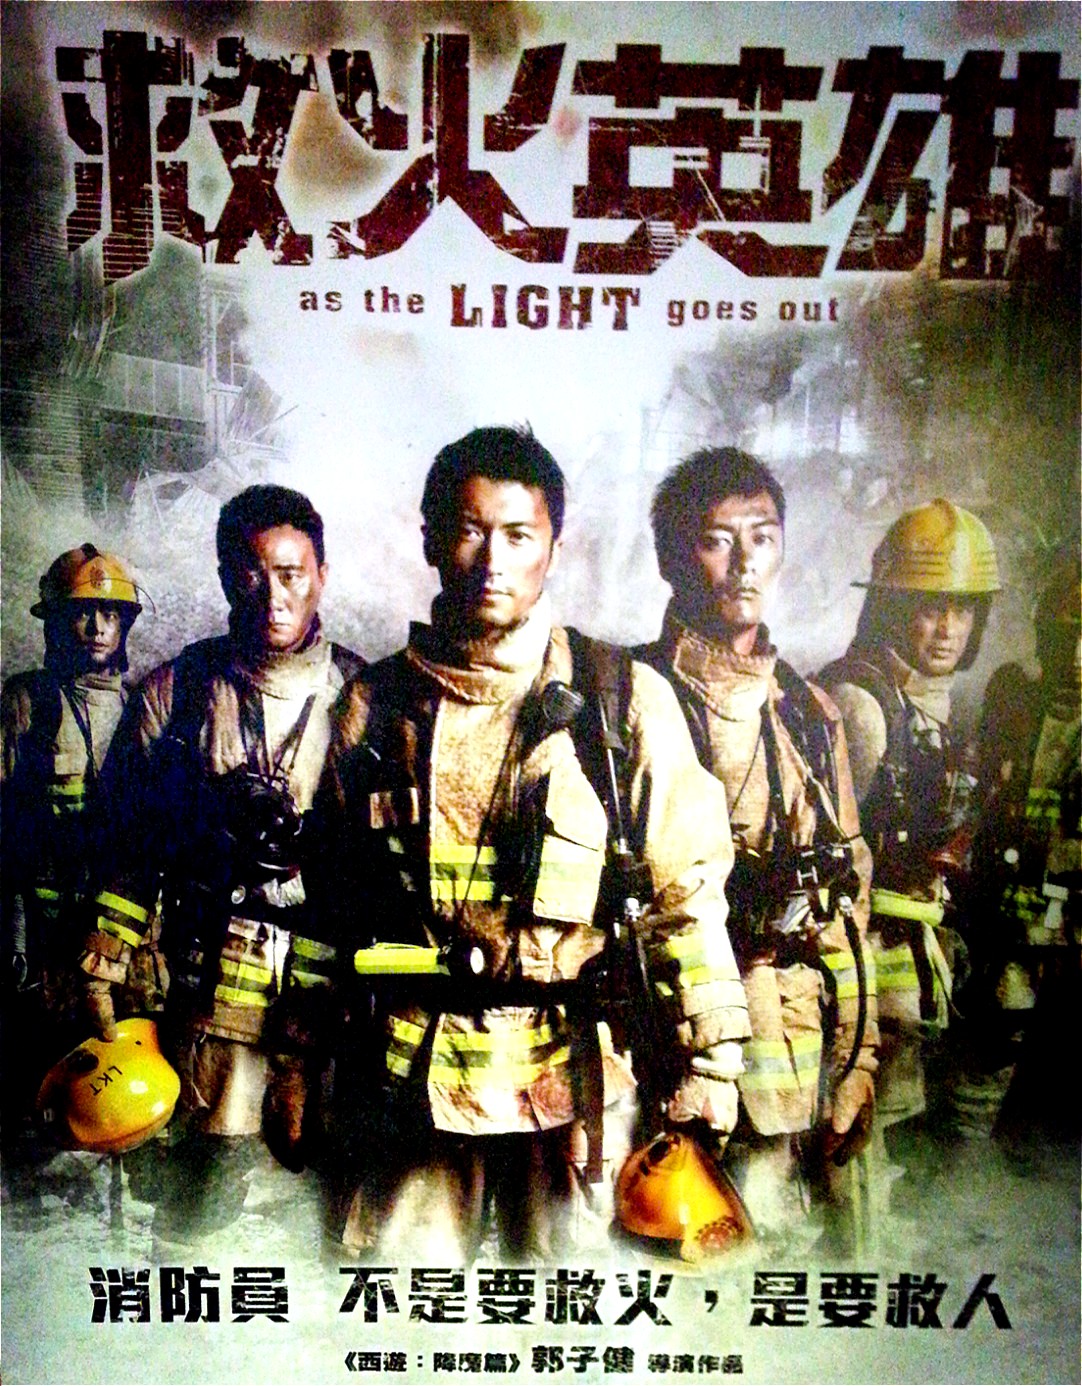 《烈火英雄》深刻诠释了中国消防员的勇敢、热血的品质